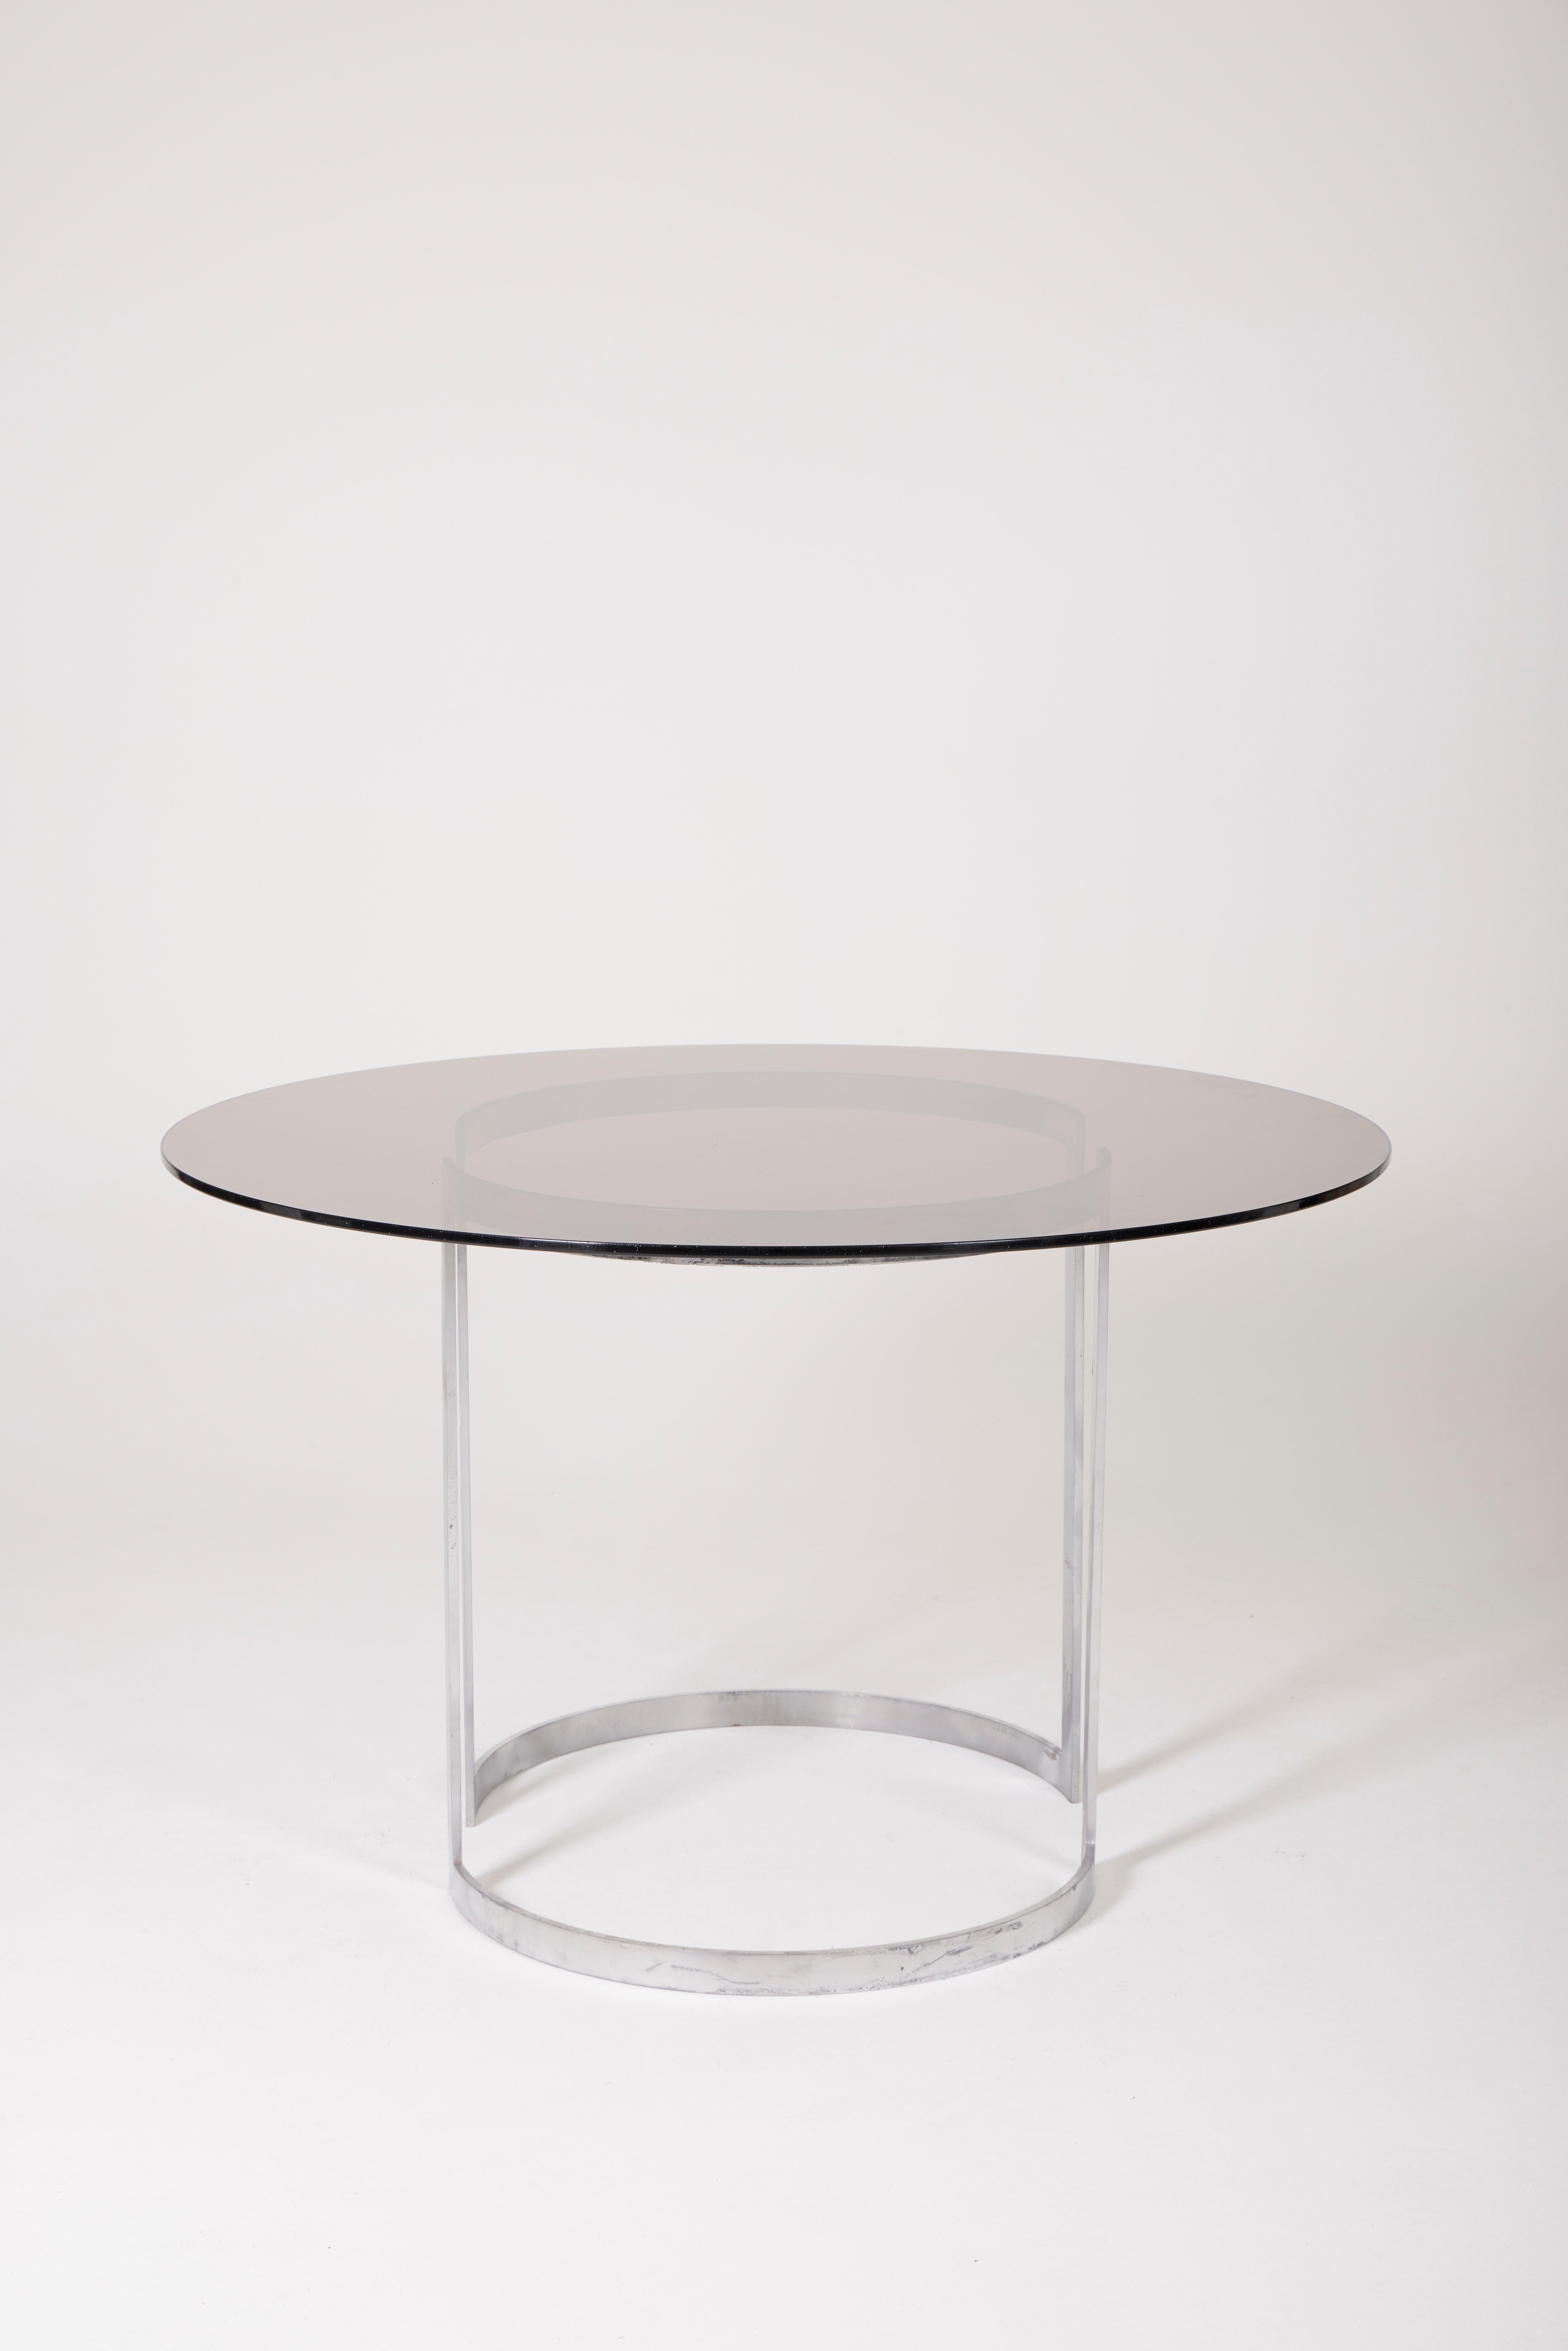 Metal Boris Tabacoff glass and metal table For Sale